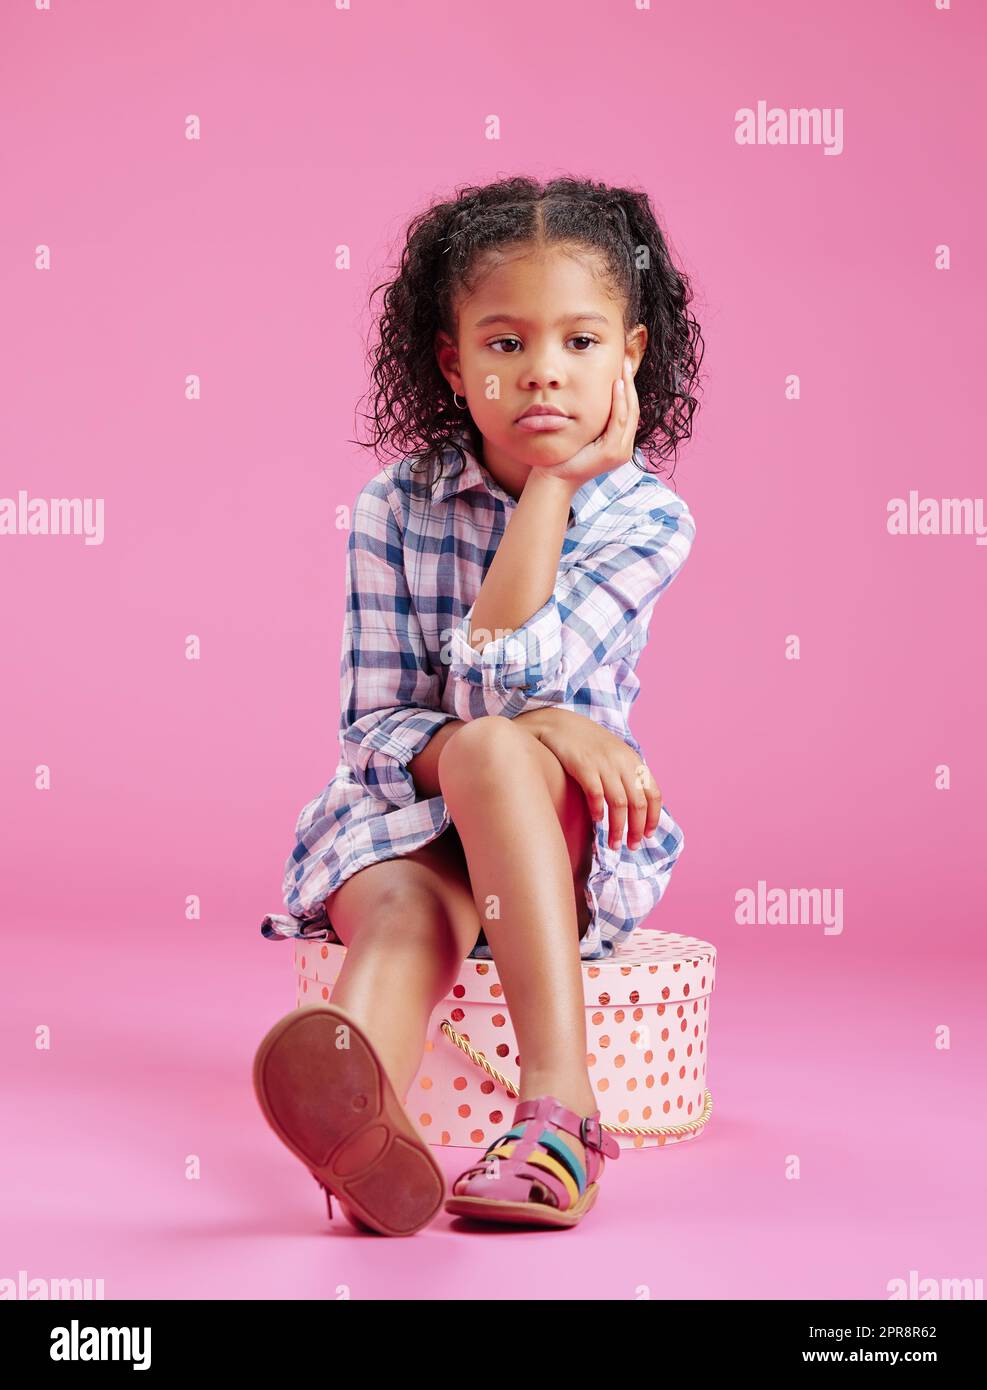 Ein süßes, gemischtes Mädchen sitzt in einem Studio und träumt vor einem pinkfarbenen Hintergrund. Ein einsames afroamerikanisches Kind, das traurig und deprimiert aussieht Stockfoto